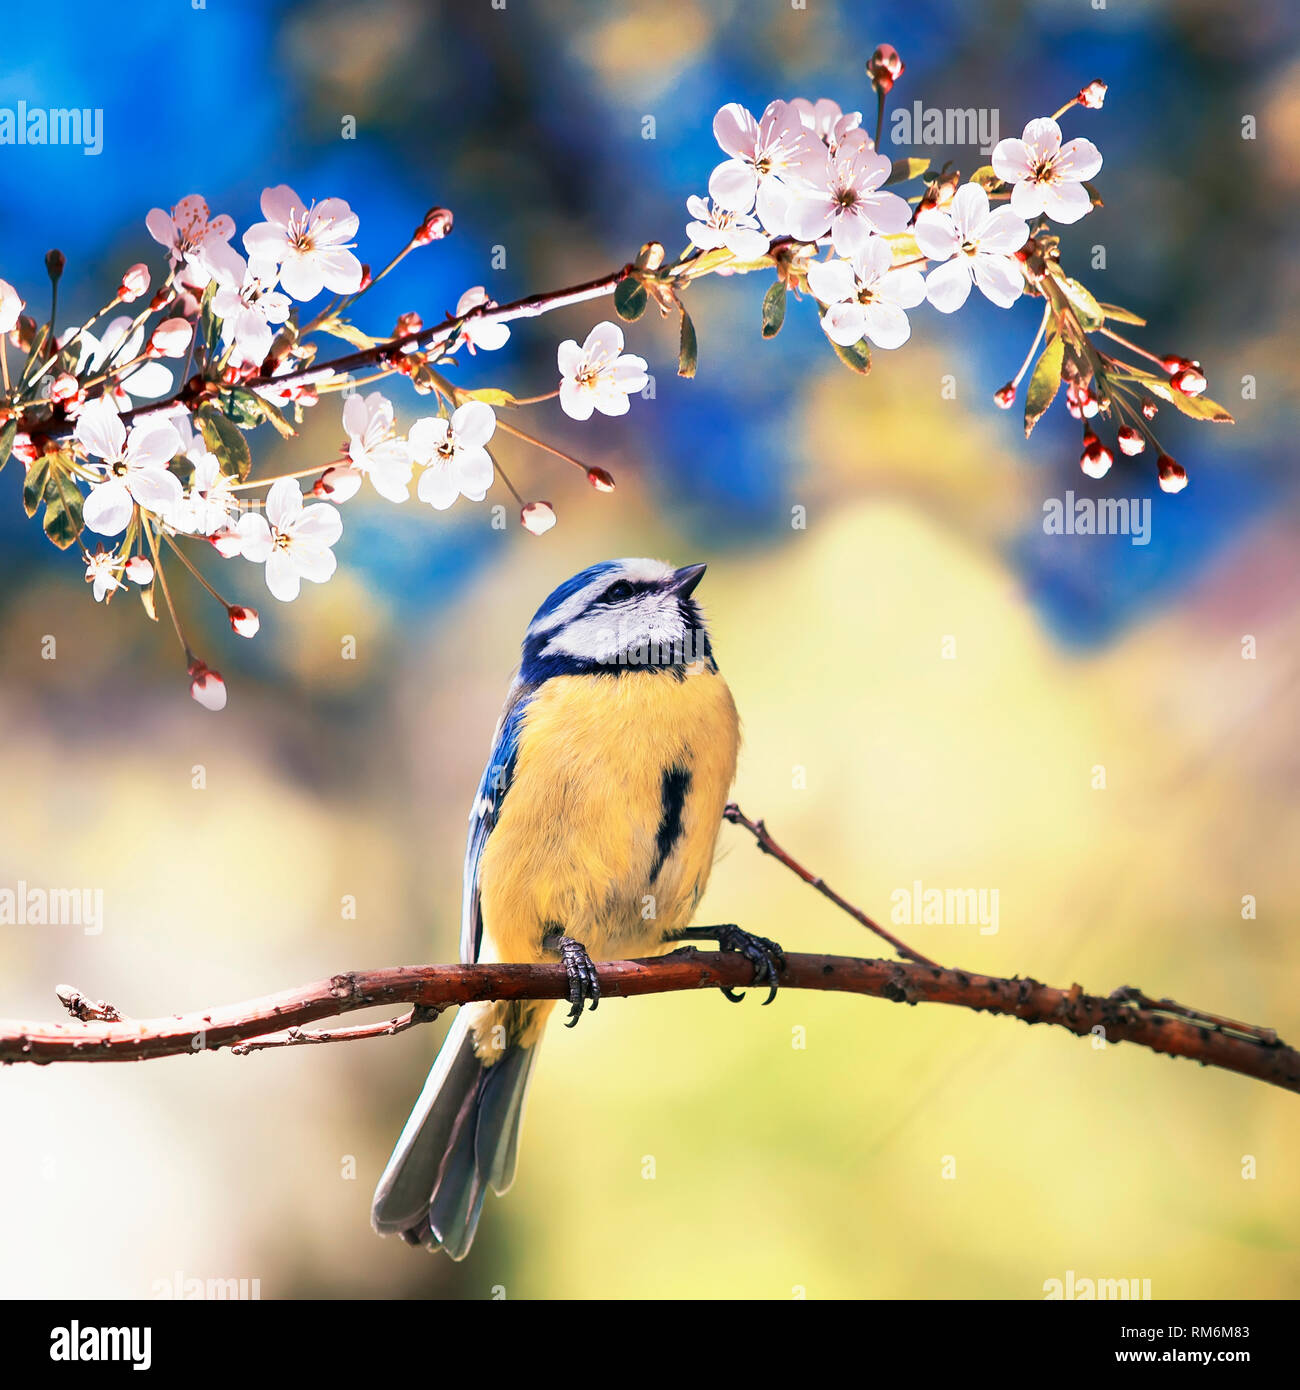 Platz natürlichen Hintergrund mit niedlichen Vogel chickadee unter den weißen Blüten der Cherry sitzen im Mai Frühling duftenden Garten Stockfoto